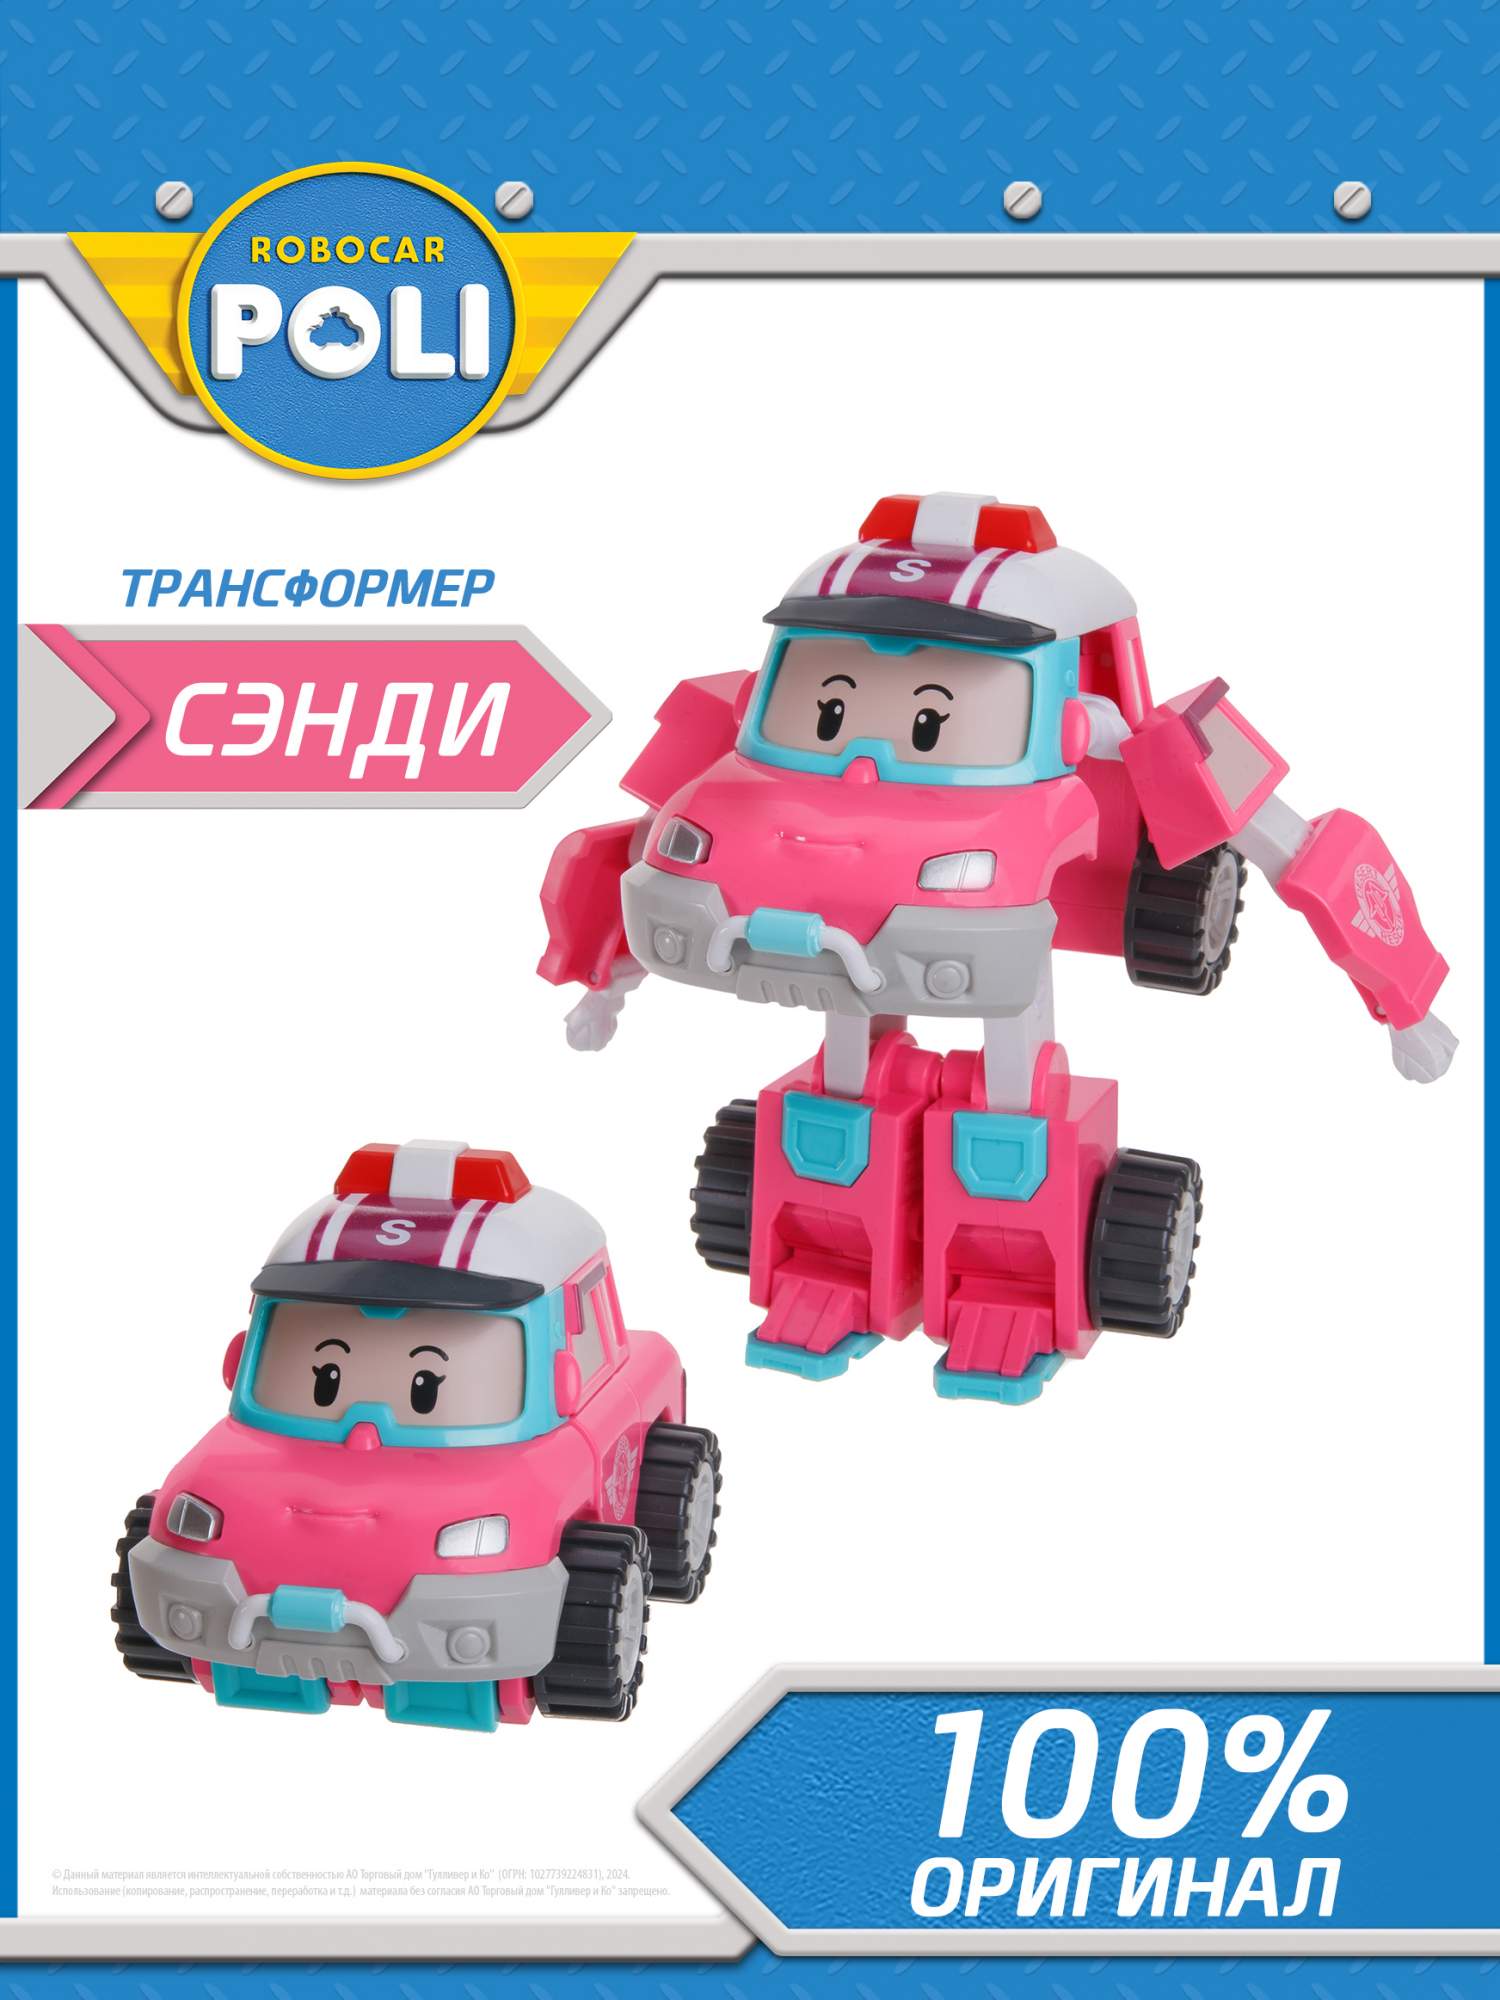 Робот-трансформер Robocar Poli, Сэнди 10 см, Робокар Поли рой robocar poli трансформер 10 см